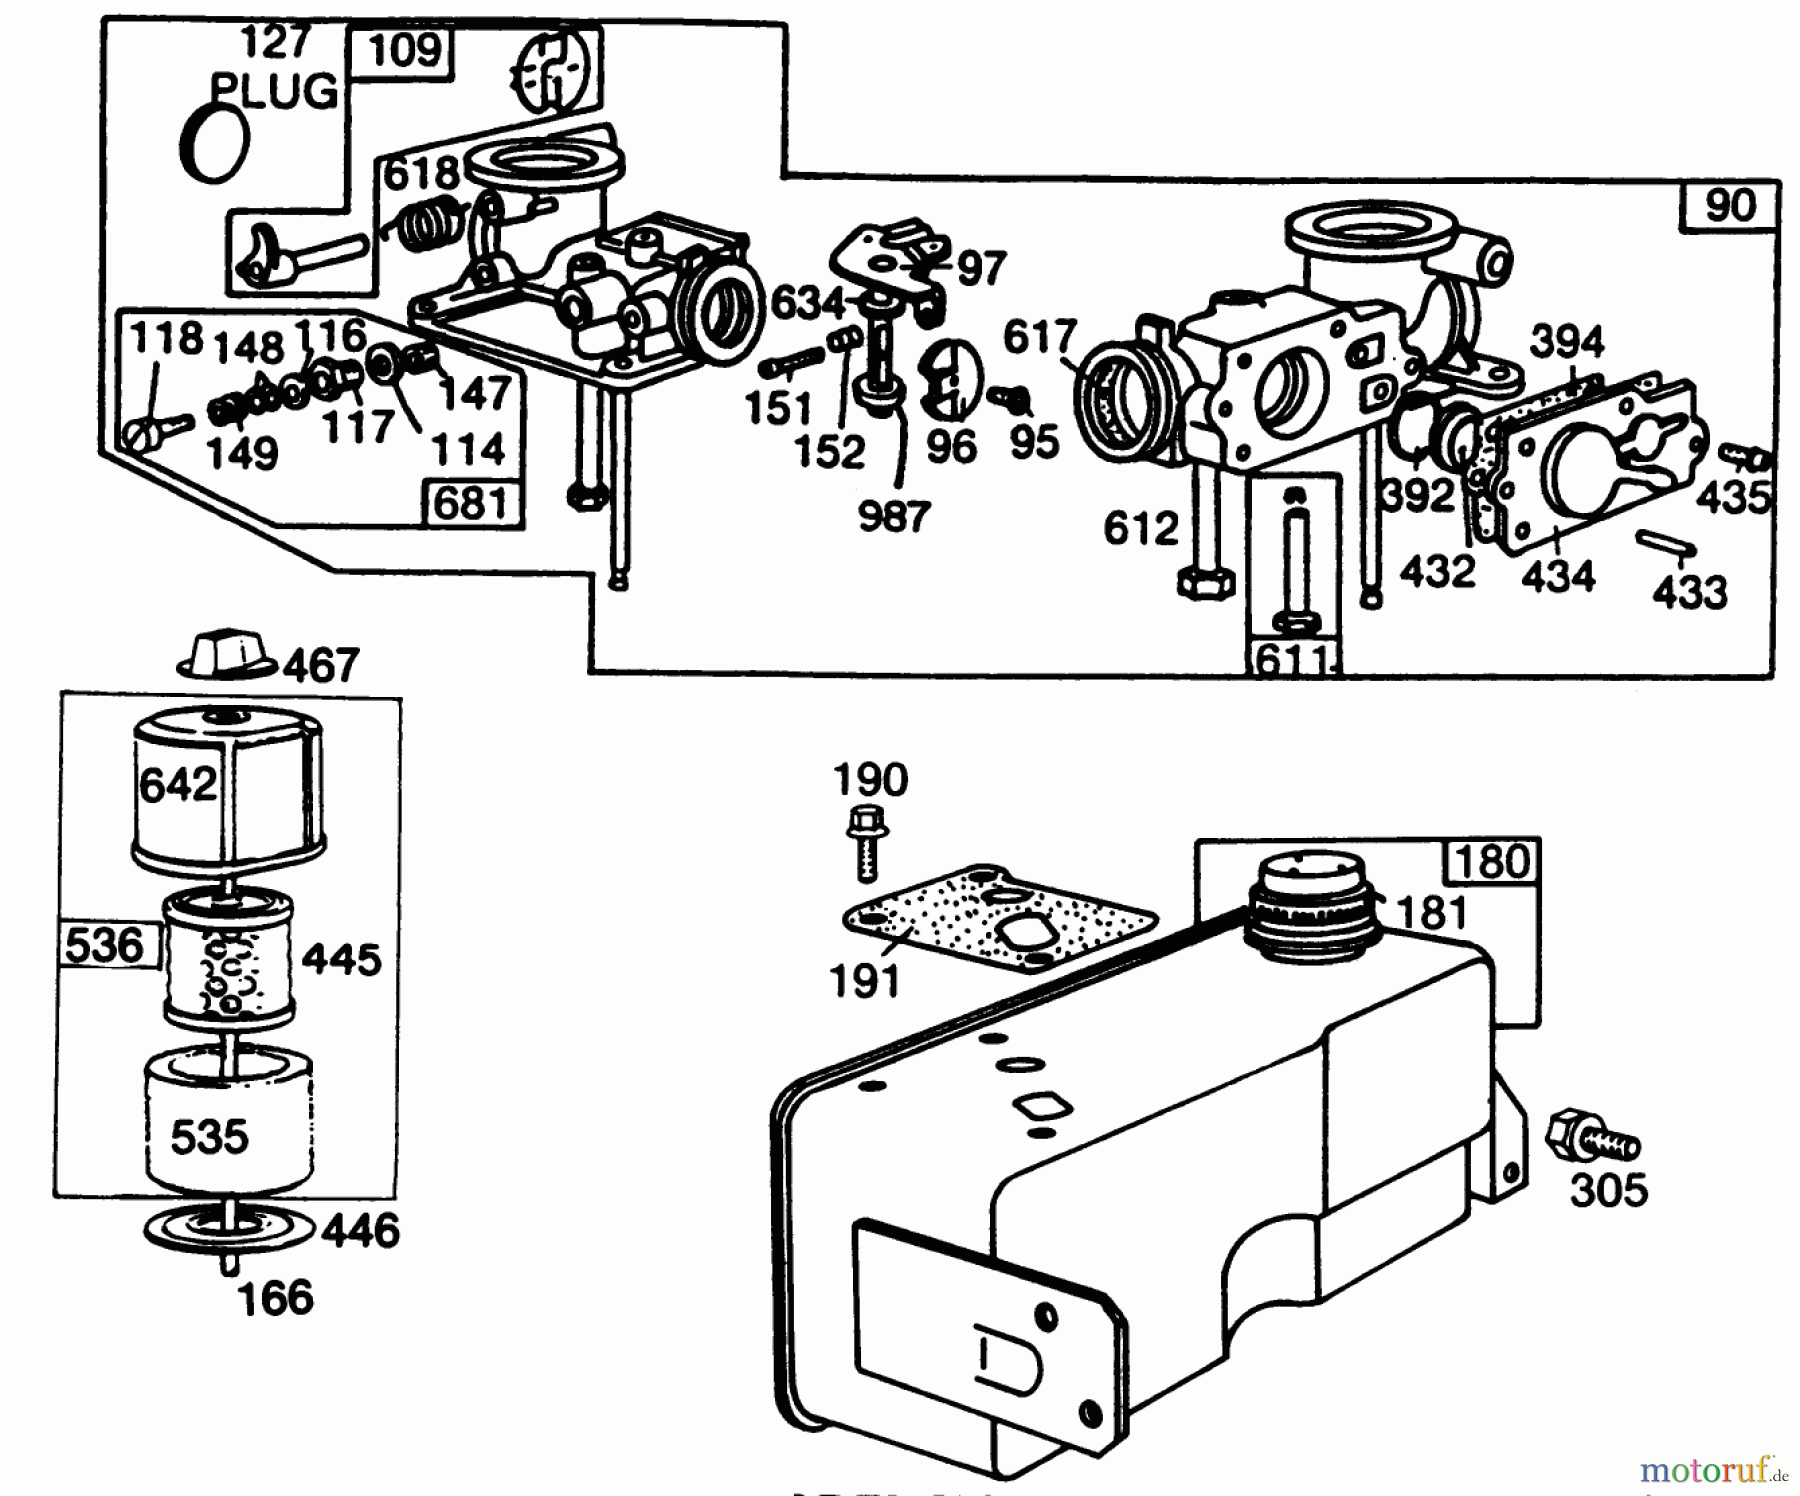  Toro Neu Mowers, Walk-Behind Seite 2 22005 - Toro Lawnmower, 1988 (8000001-8999999) ENGINE BRIGGS & STRATTON MODEL NO. 130902 TYPE 1200-01 #3